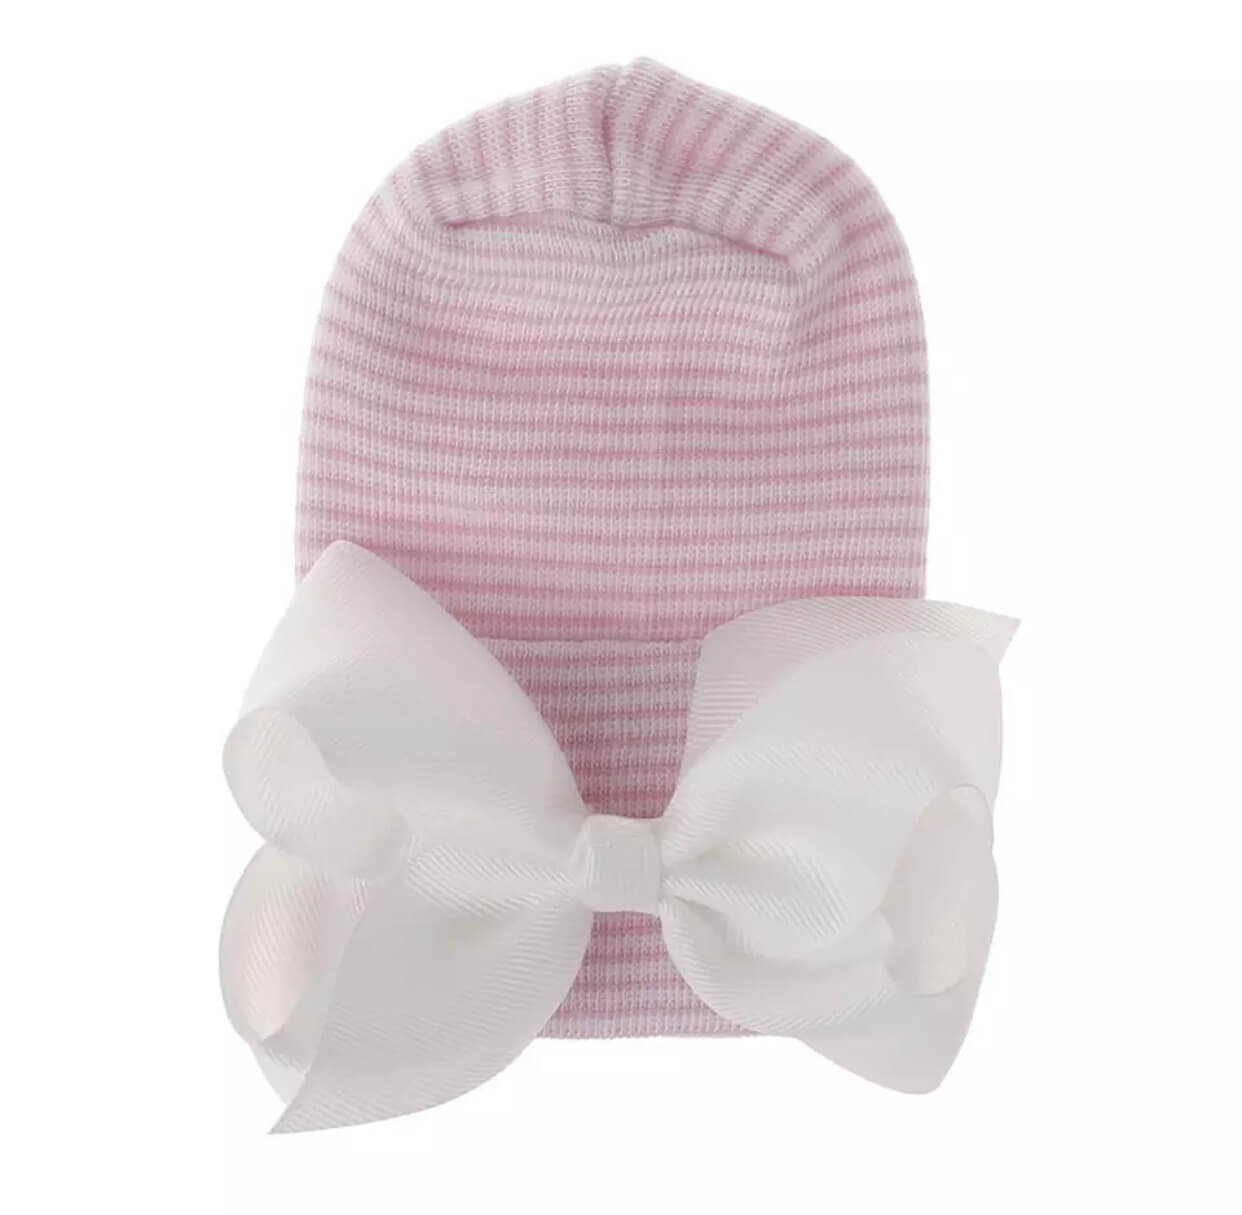 Babymütze Rosa gestreift mit weißer Schleife extra warm